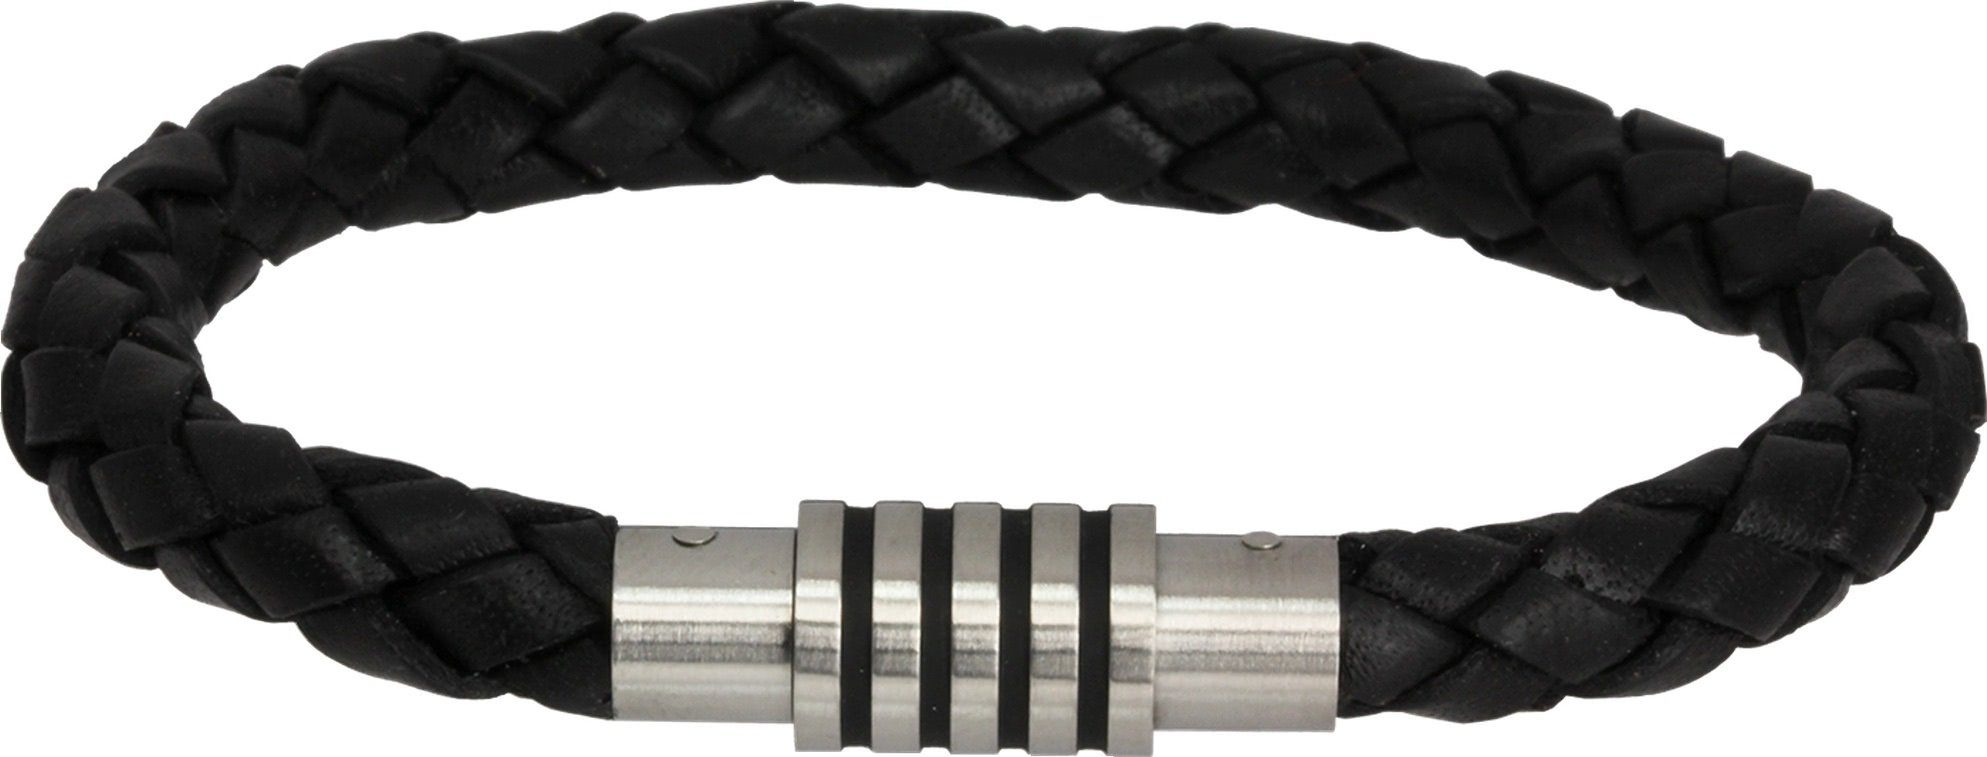 Amello Edelstahlarmband Amello Armband schwarz Herren Armschmuck (Armband), Herren  Armband ca. 22cm, Edelstahl (Stainless Steel), Farbe: schwarz